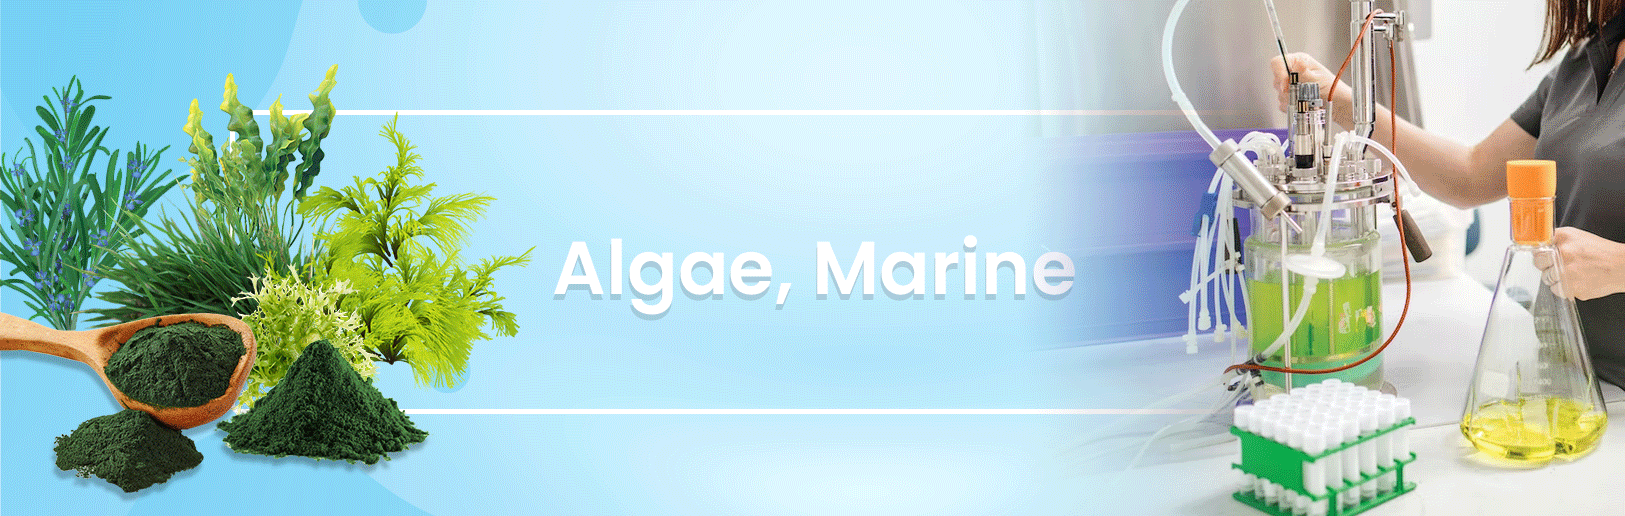 Algae, Marine